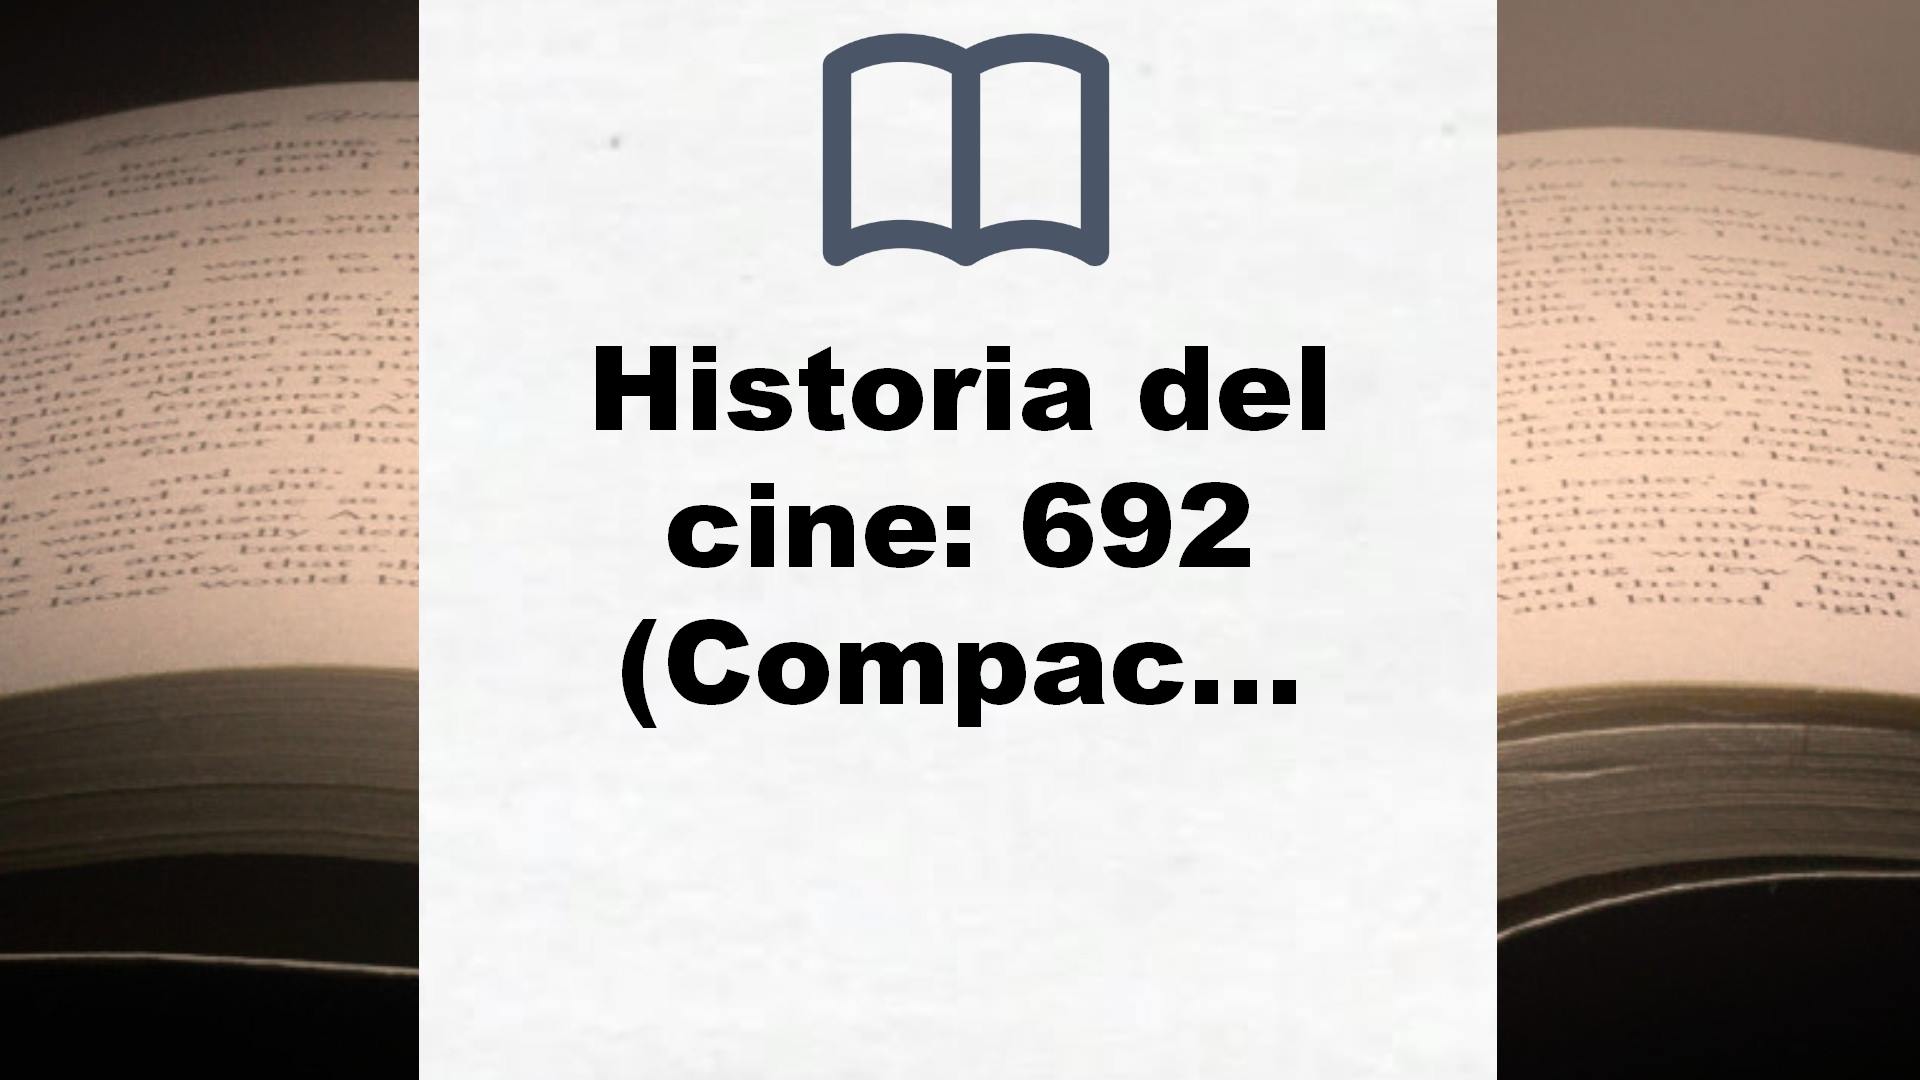 Historia del cine: 692 (Compactos) – Reseña del libro